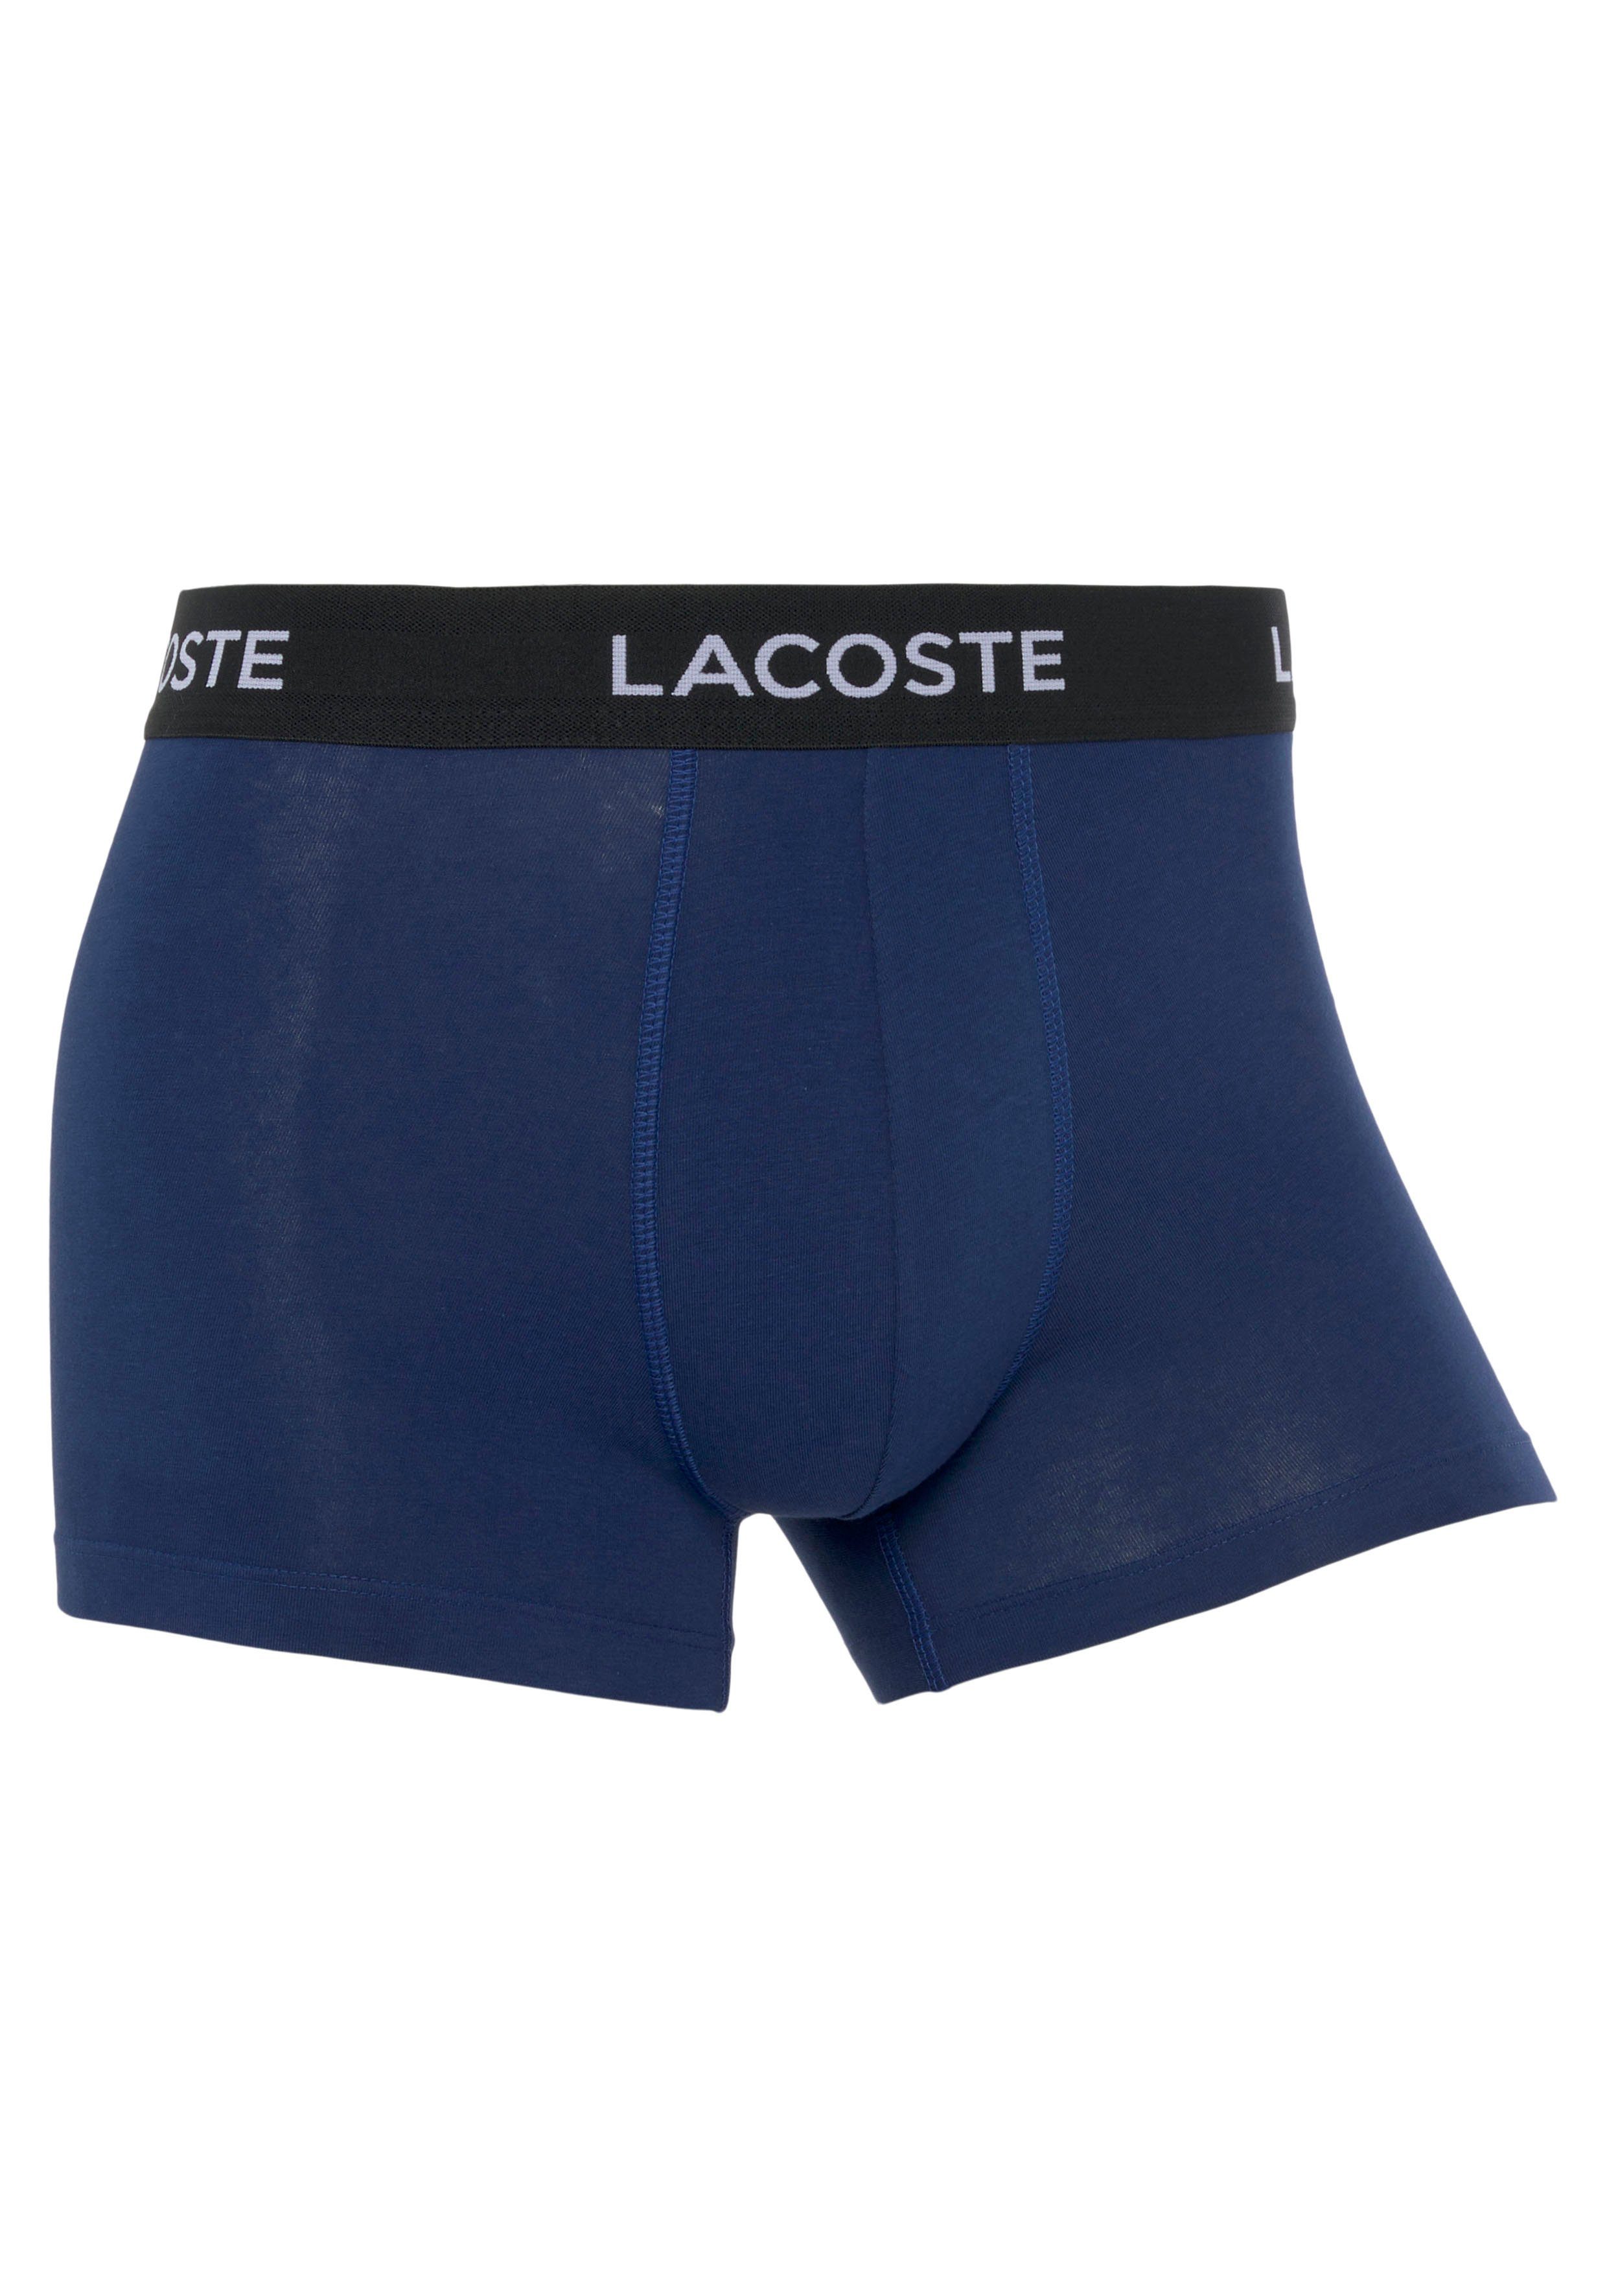 hellblau mit Lacoste Boxershorts 3-St., Bund 3er-Pack) Lacoste-Schriftzug navy/ blau/ (Packung, am